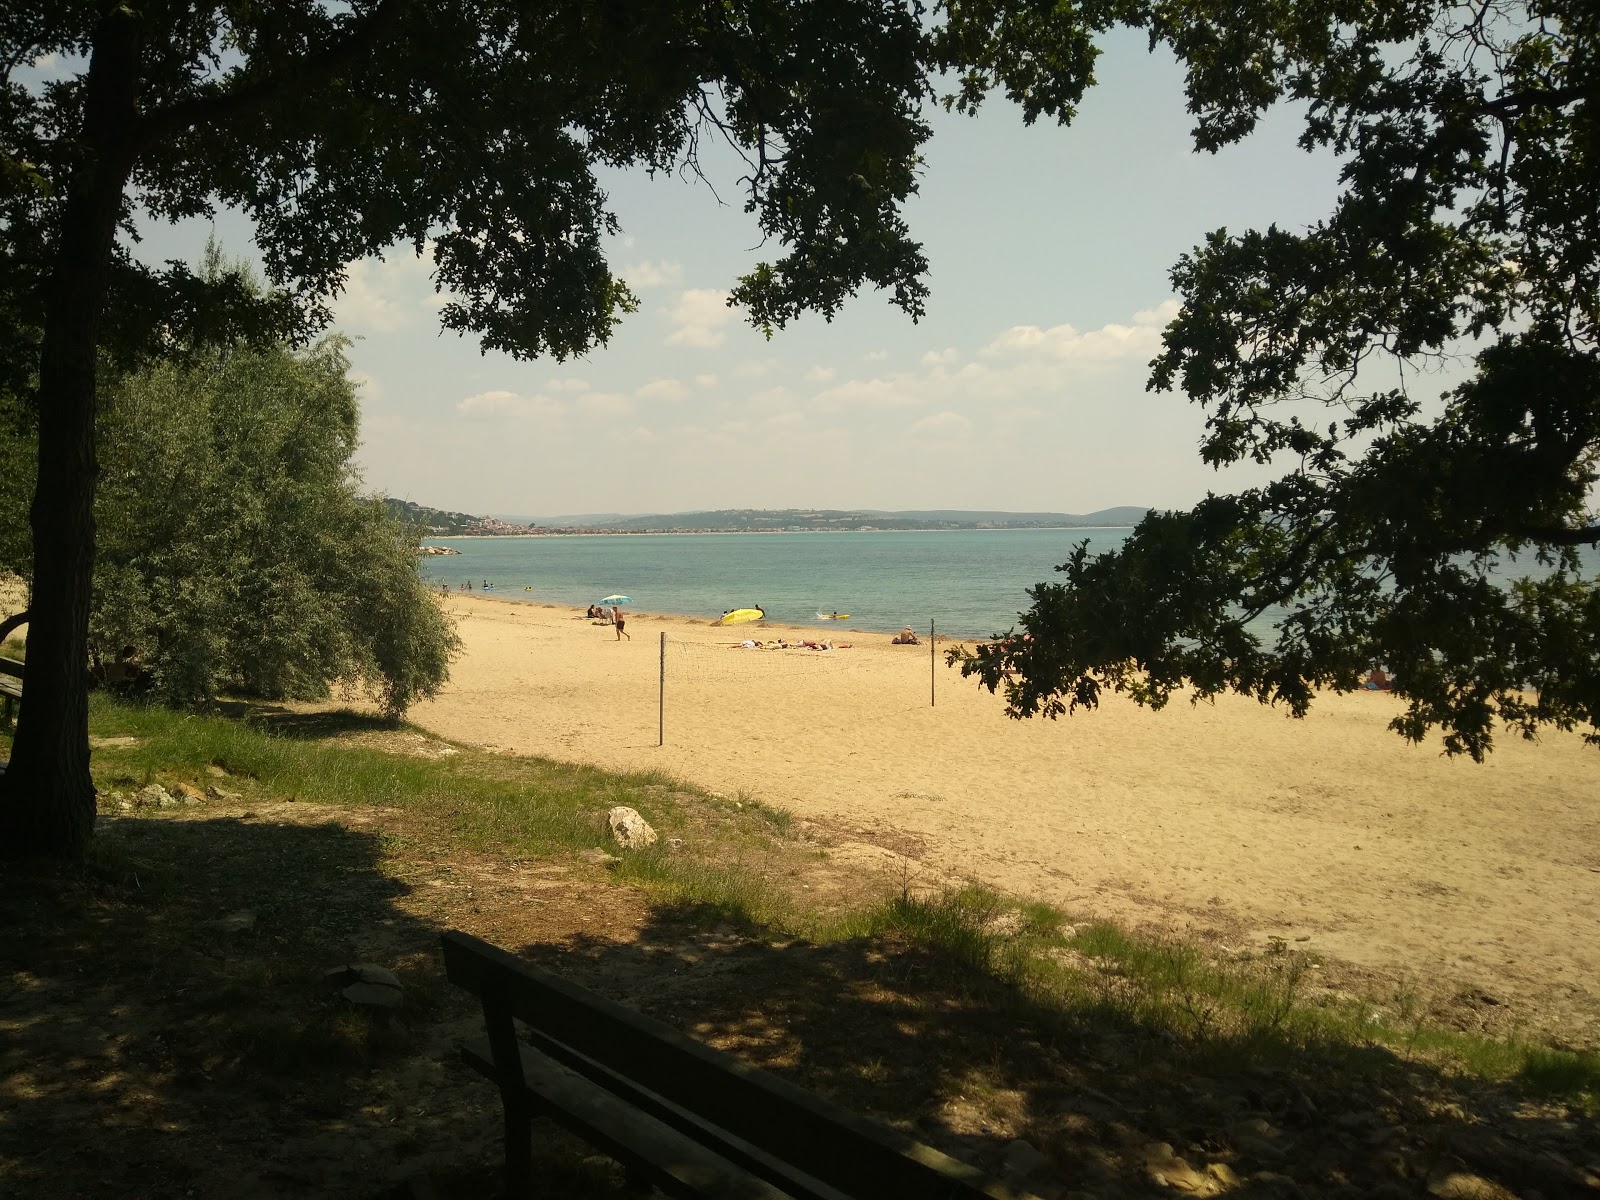 Photo de Erikli beach III - endroit populaire parmi les connaisseurs de la détente